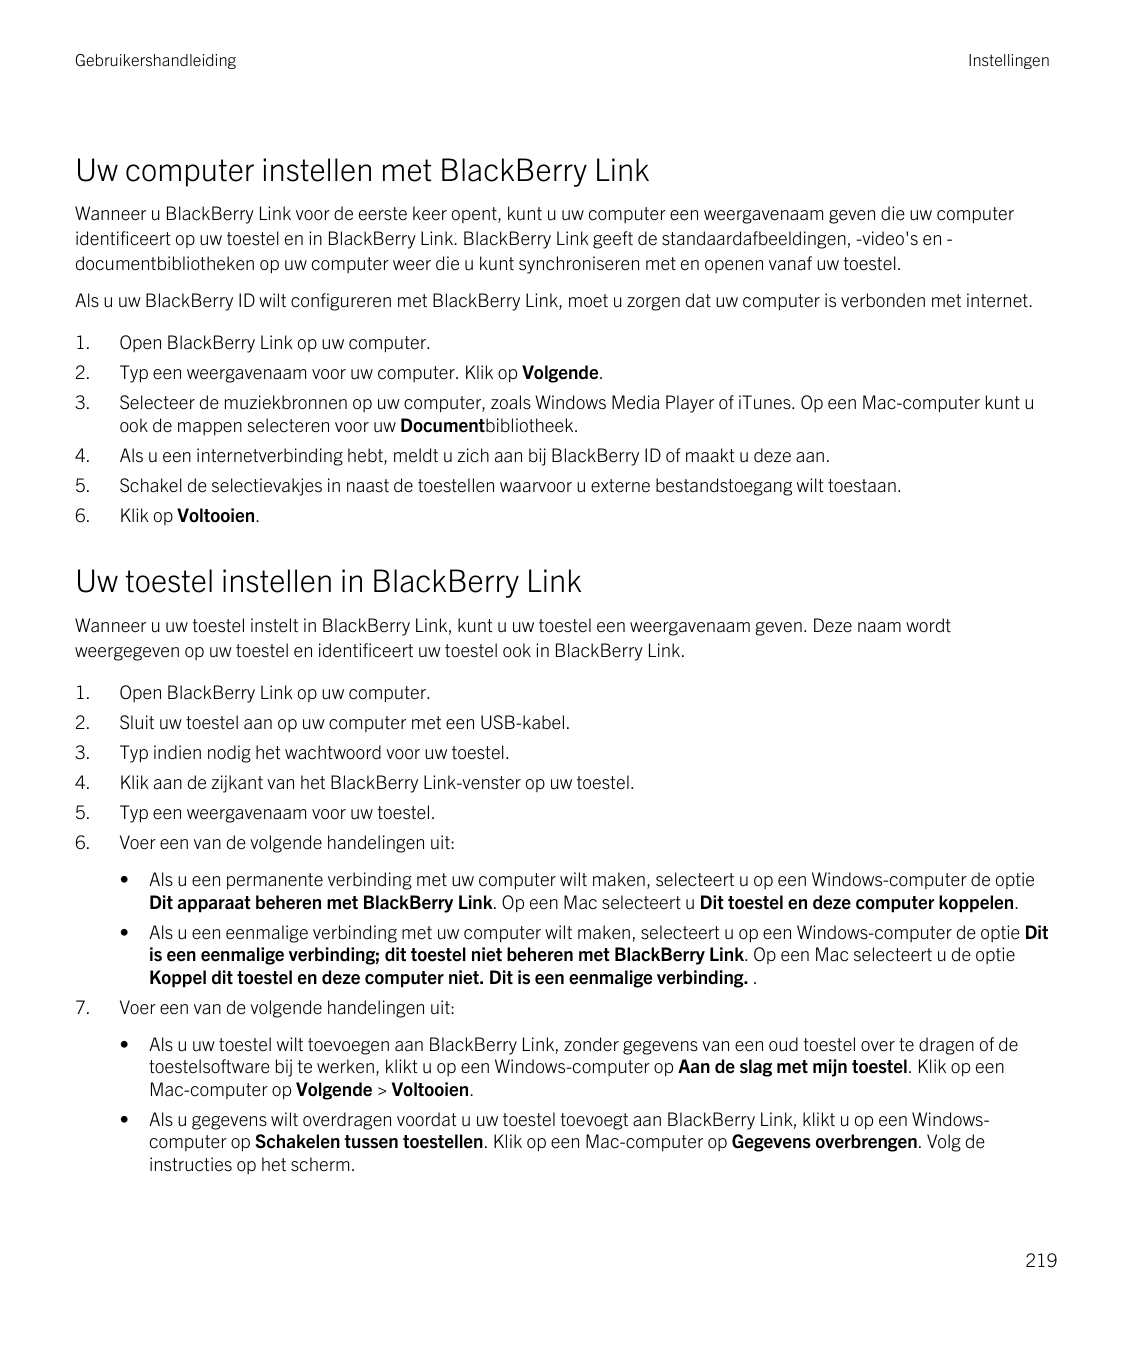 GebruikershandleidingInstellingenUw computer instellen met BlackBerry LinkWanneer u BlackBerry Link voor de eerste keer opent, k